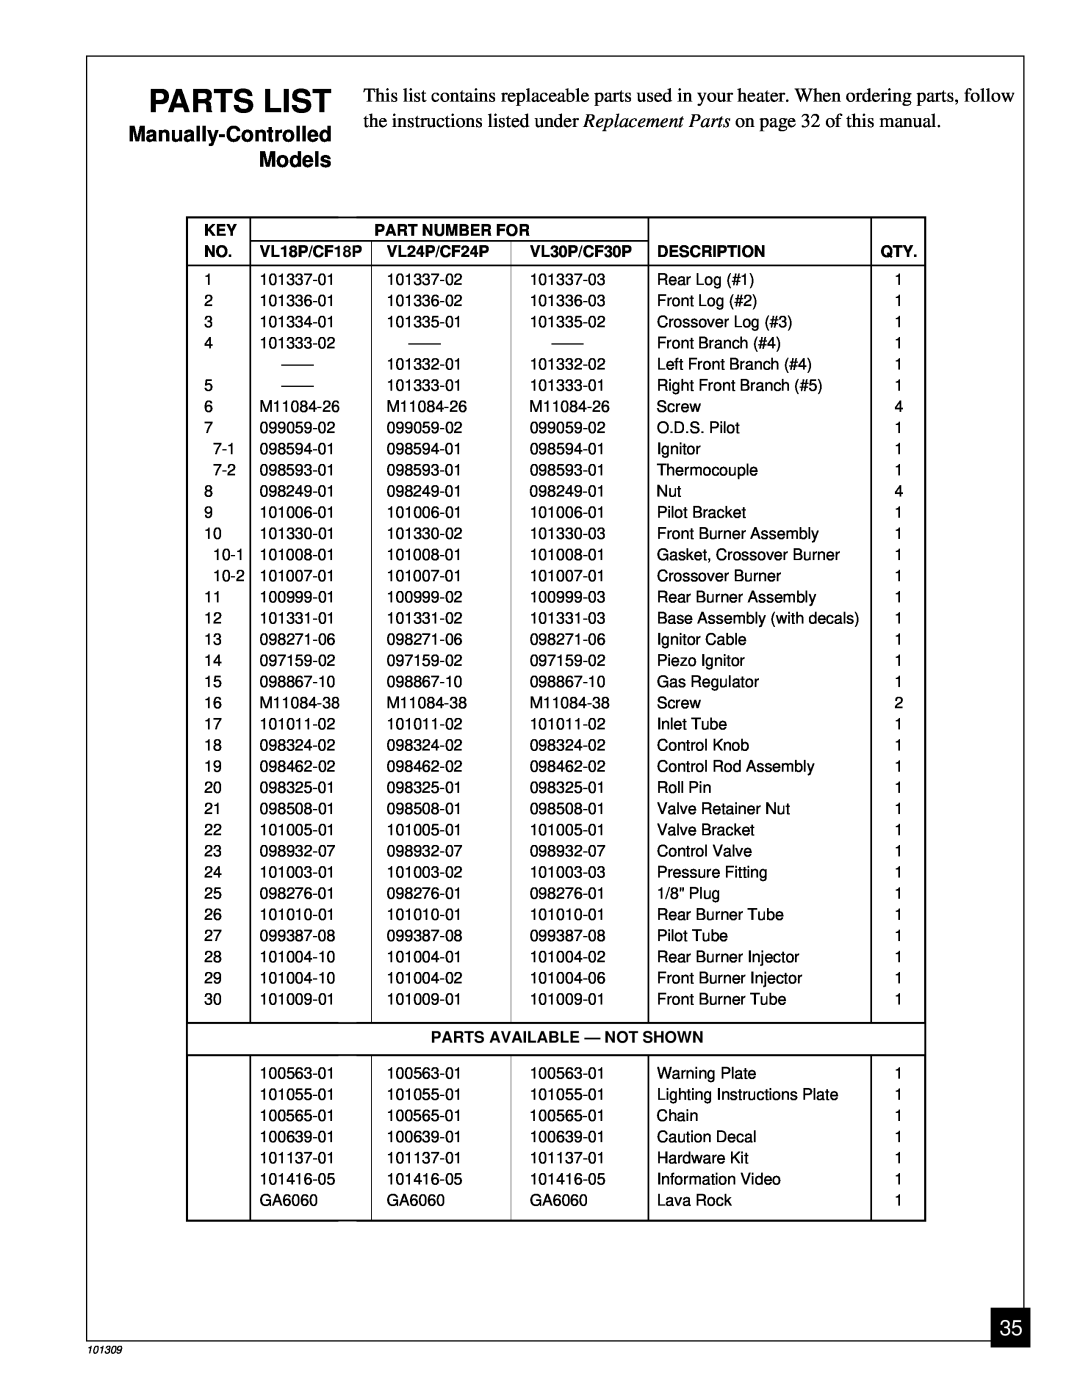 Desa UNVENTED (VENT-FREE) PROPANE GAS LOG HEATER Parts List, Part Number For, VL18P/CF18P, VL24P/CF24P, VL30P/CF30P 